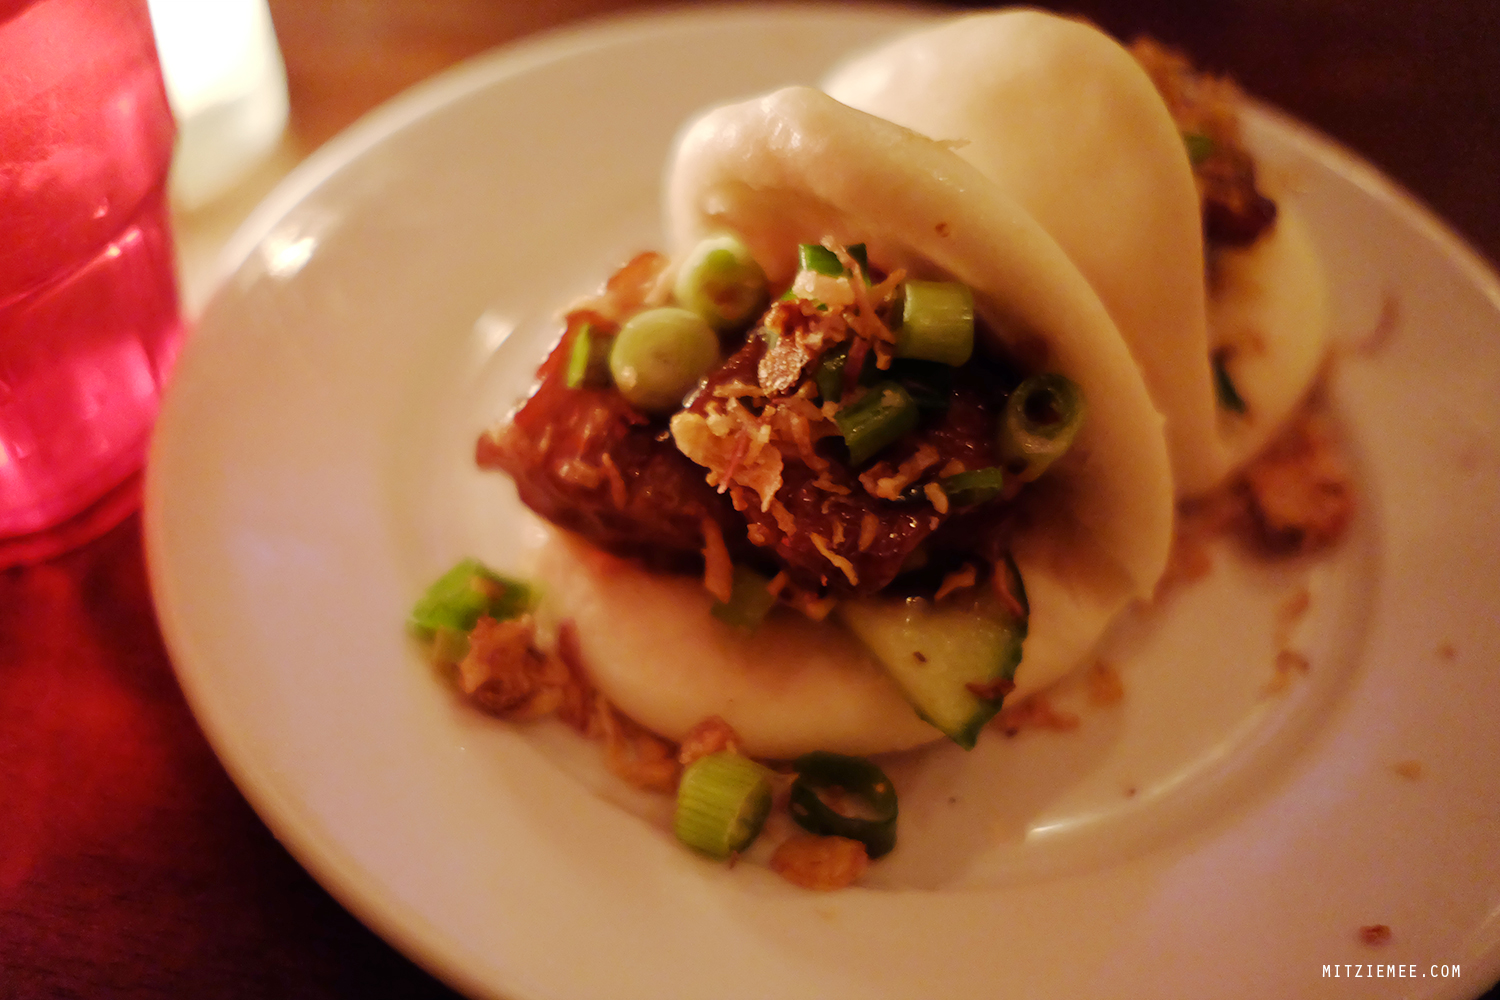 Steamed Pork Belly Buns at An Choi, Vietnamese restaurant, New York City